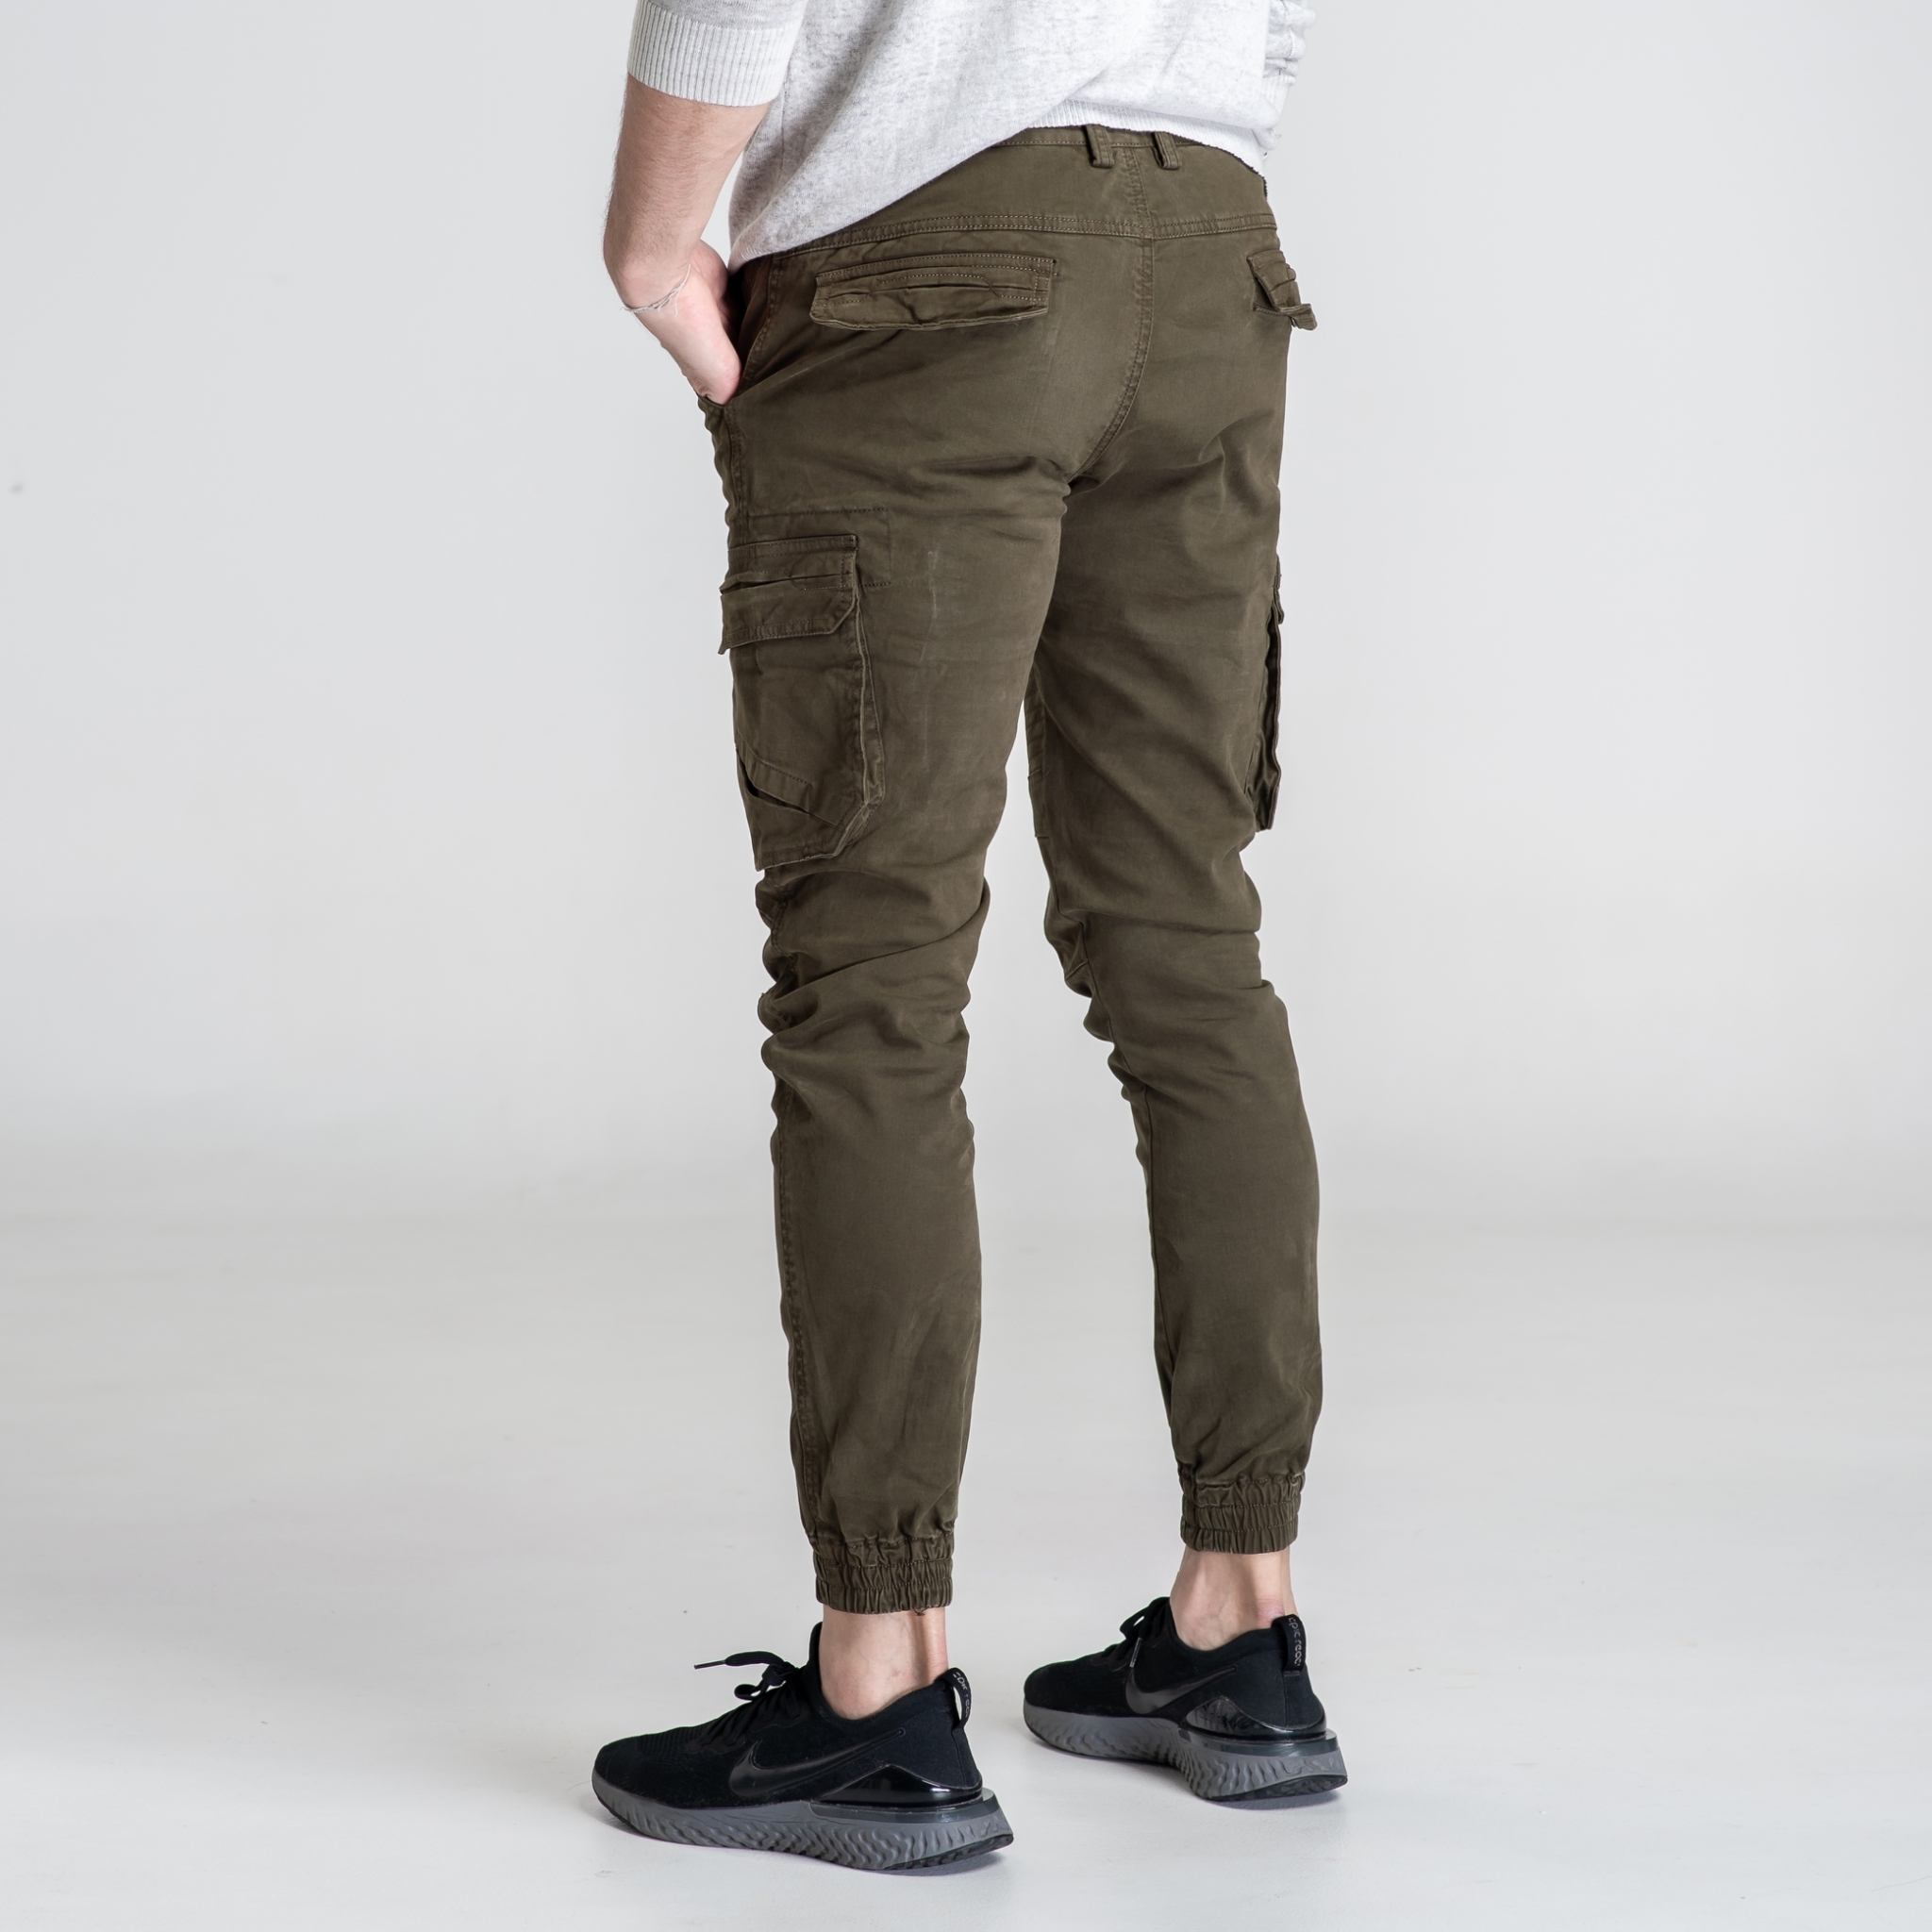 กางเกงขายาวผู้ชาย กางเกงขายาวคาร์โก้หลายกระเป๋า ปลายขาจั๊มชาย สุดเท่ ทรงสวยสไตร์เกาหลีW9061